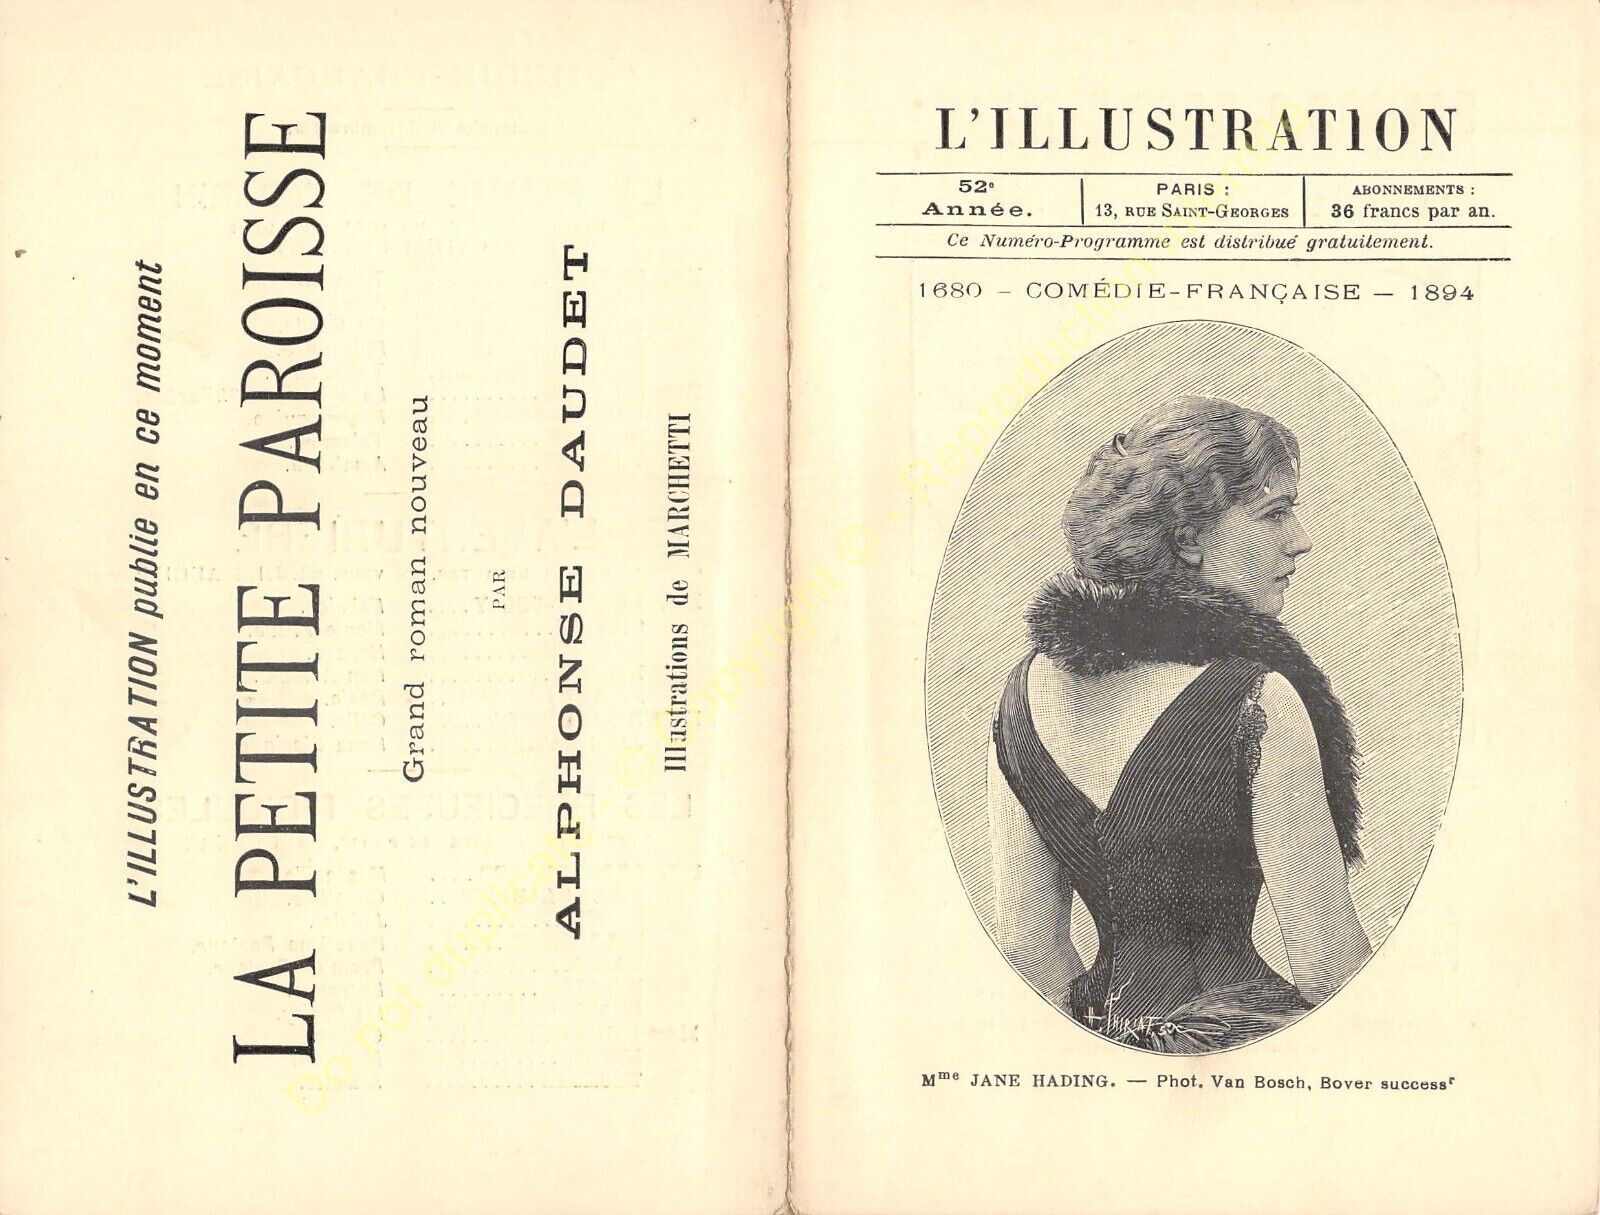 STAR Théâtre Comédie Française JEANNE HADING actress photo VAN BOSCH 1894